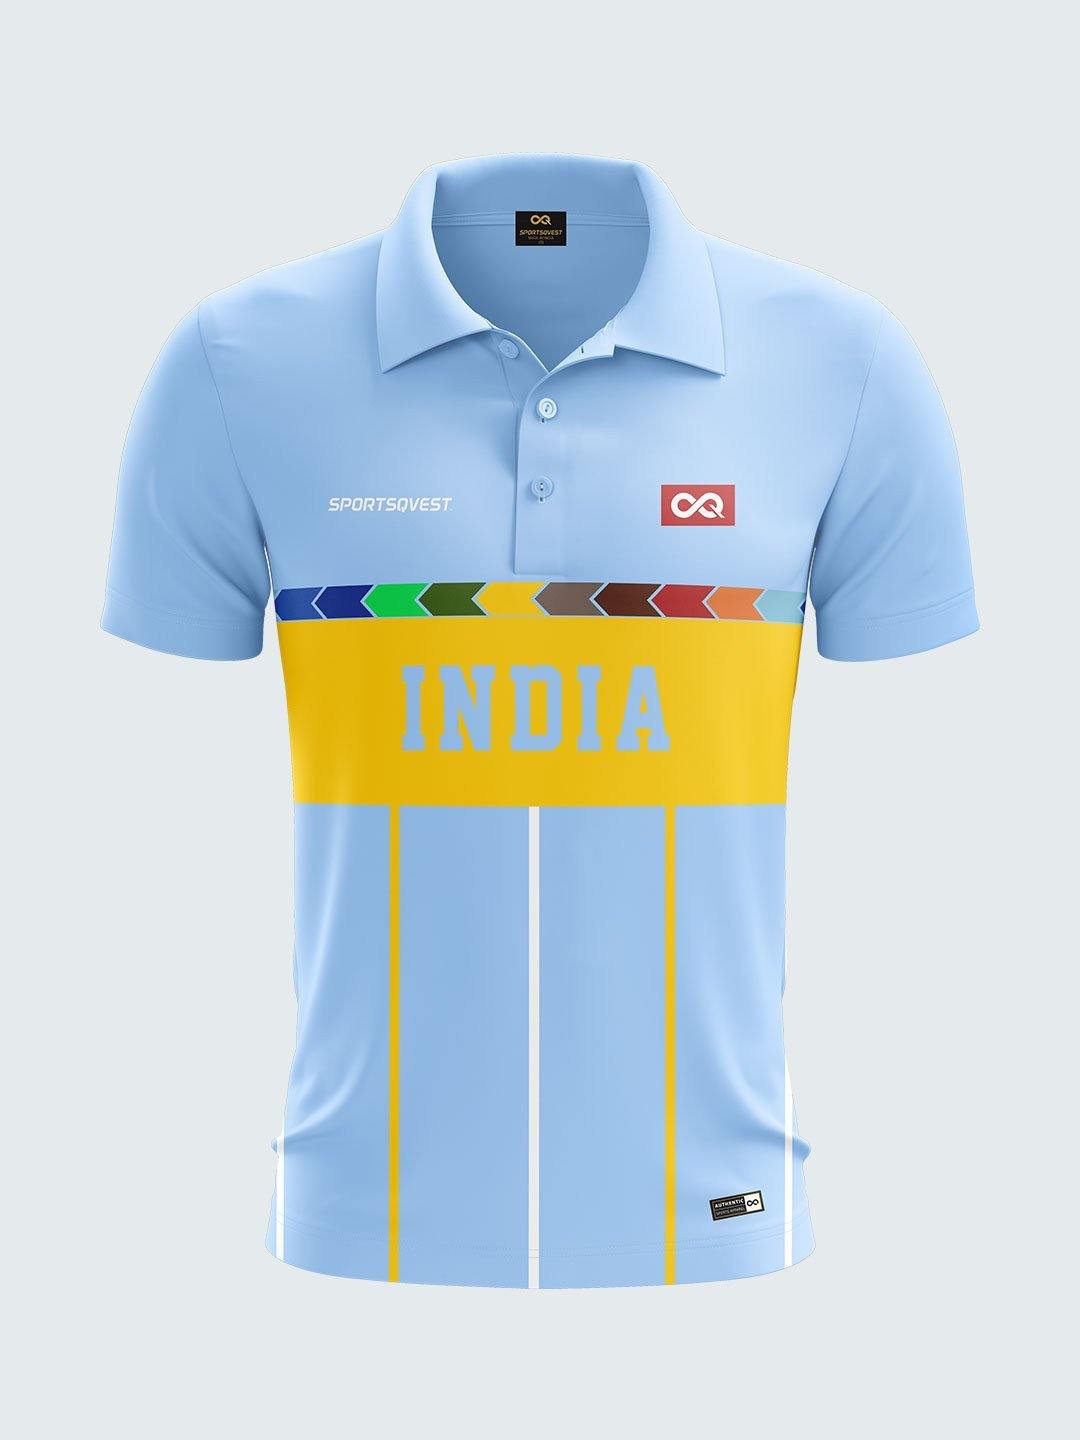 indian cricket jersey t shirt